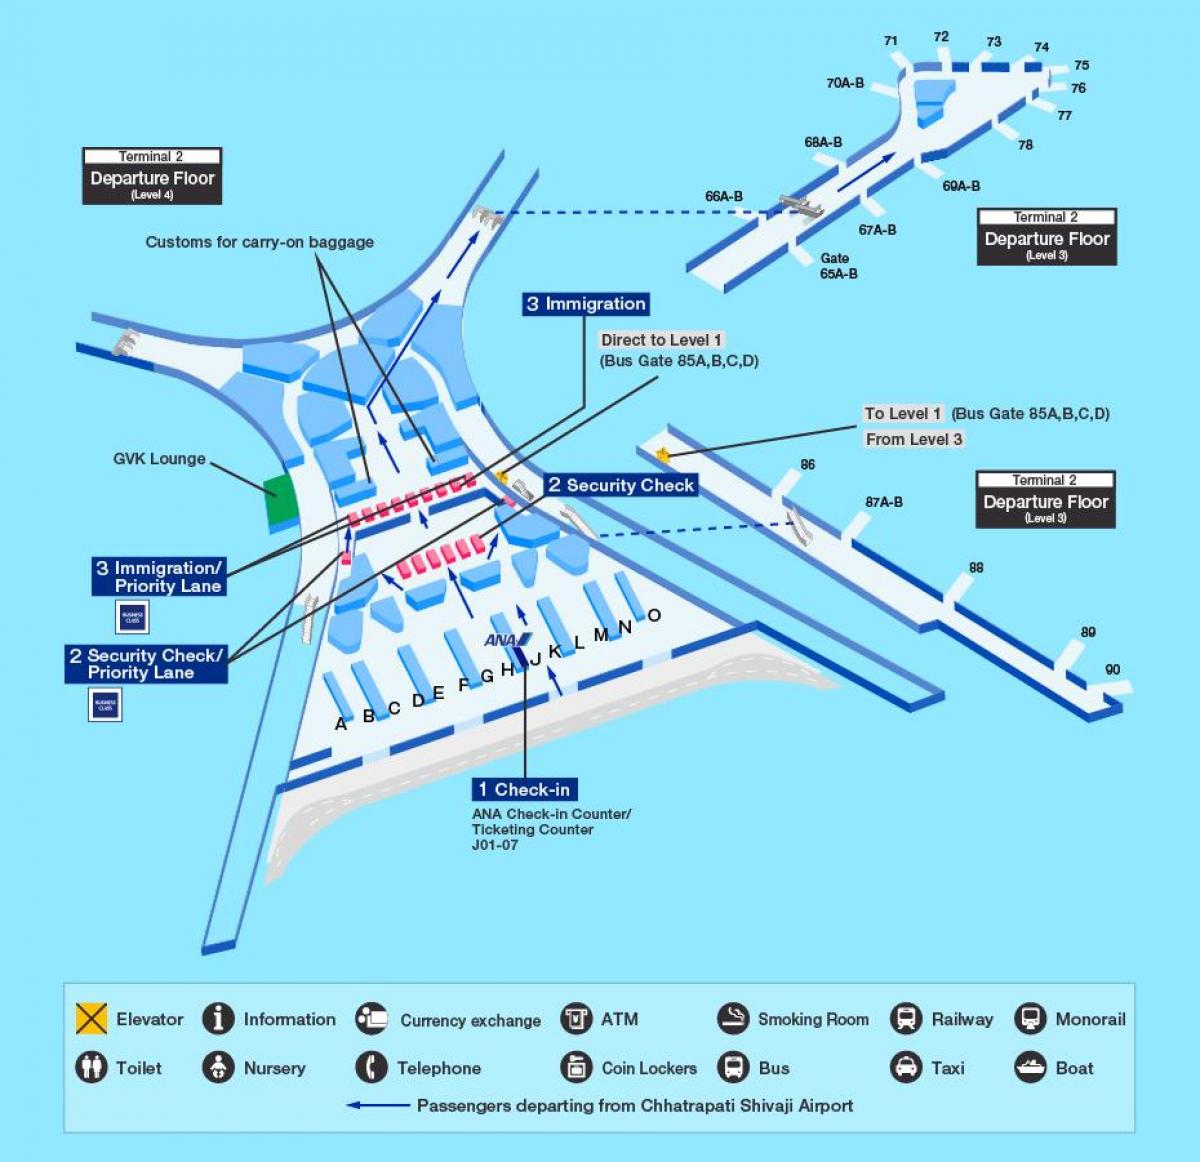 χάρτης της Mumbai airport